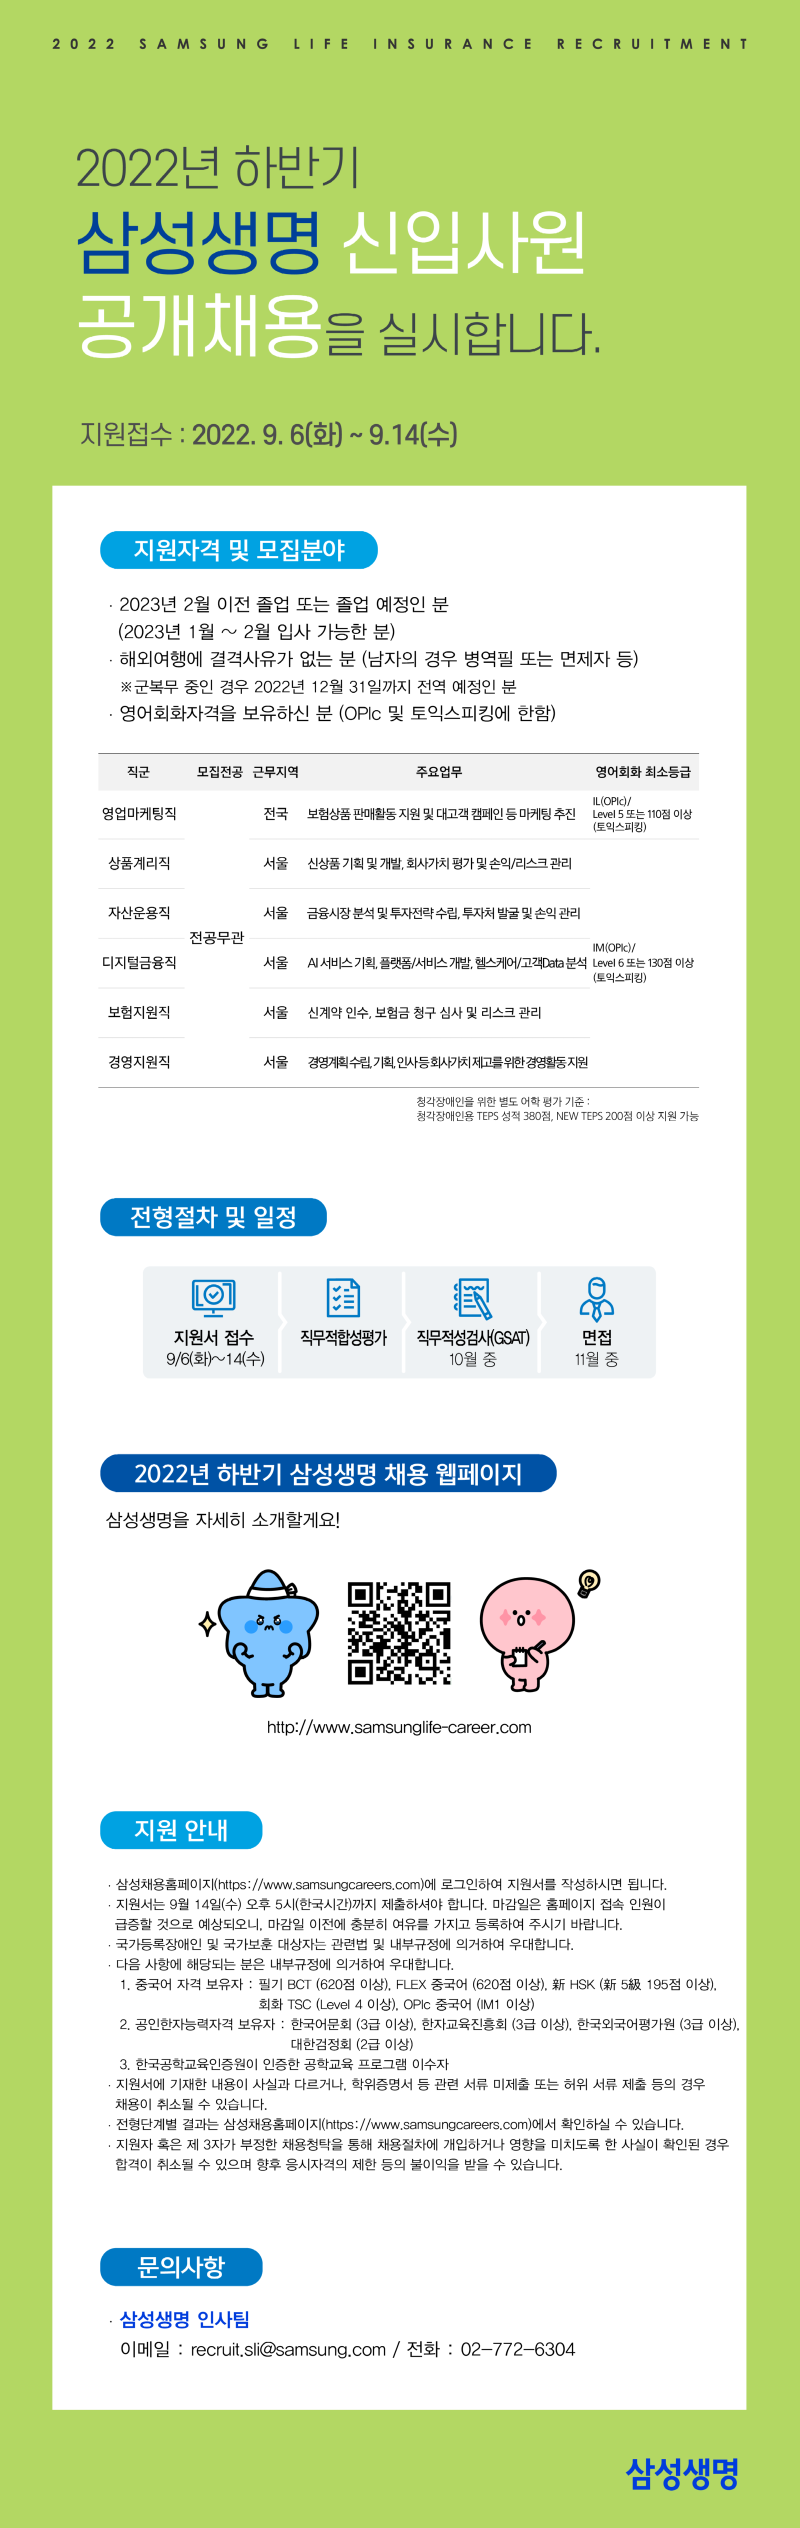 (한경디스코) 삼성생명 2022 하반기 웹공고_220902_최종 (1).png